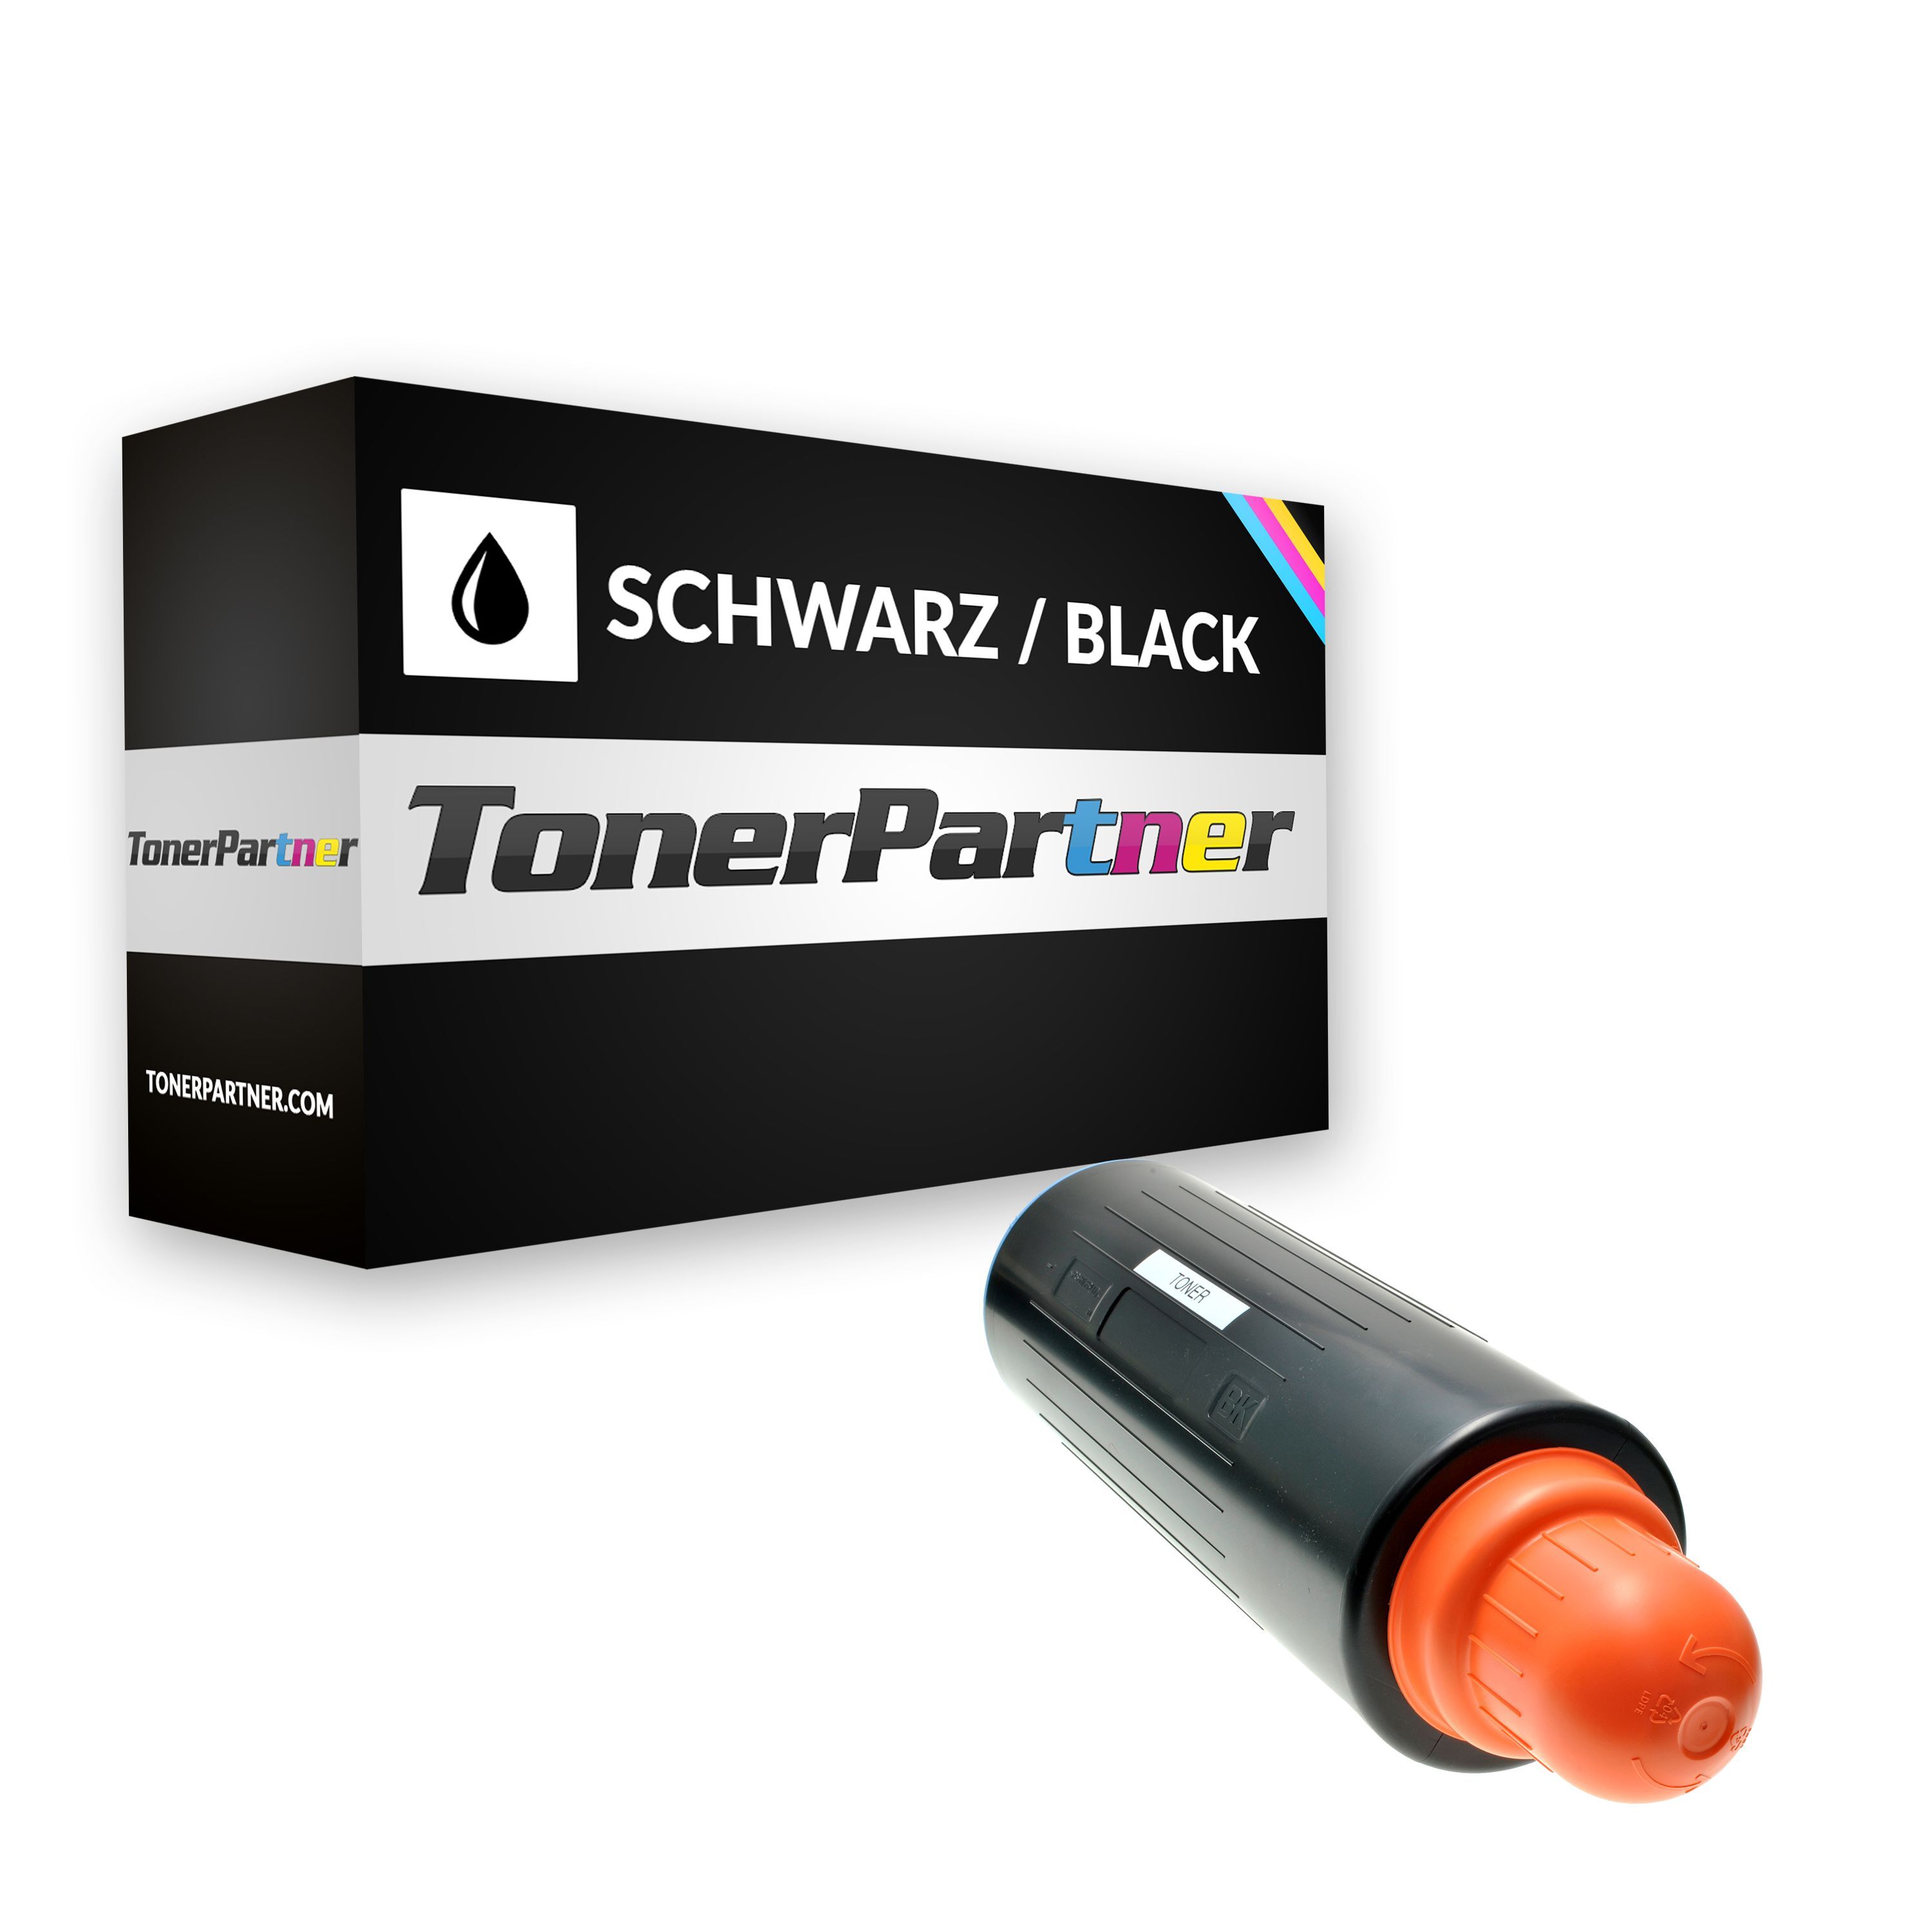 TonerPartner Kompatibel zu Canon imageRUNNER 5570 Toner (C-EXV 13 / 0279 B 002) schwarz, 45.000 Seiten, 0,2 Rp pro Seite, Inhalt: 2.000 g von TonerPartner